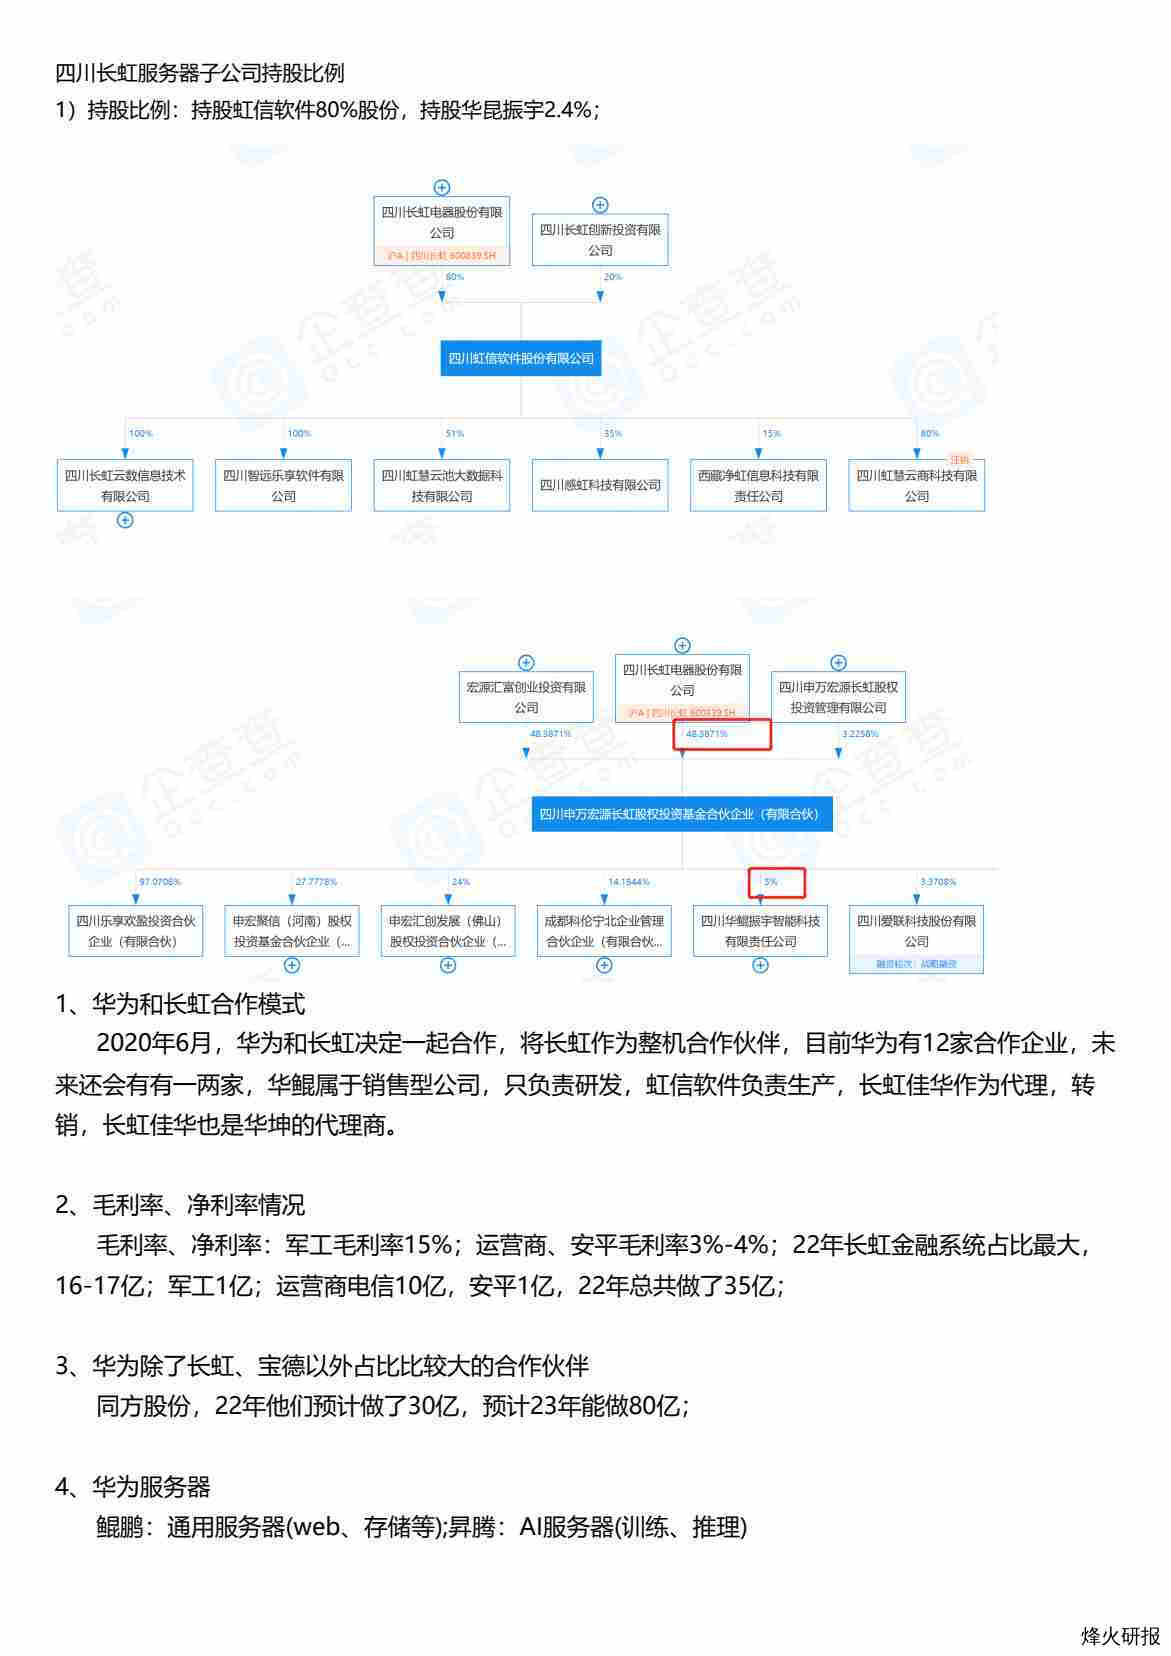 四川长虹服务器专家交流纪要-调研纪要.pdf-第一页